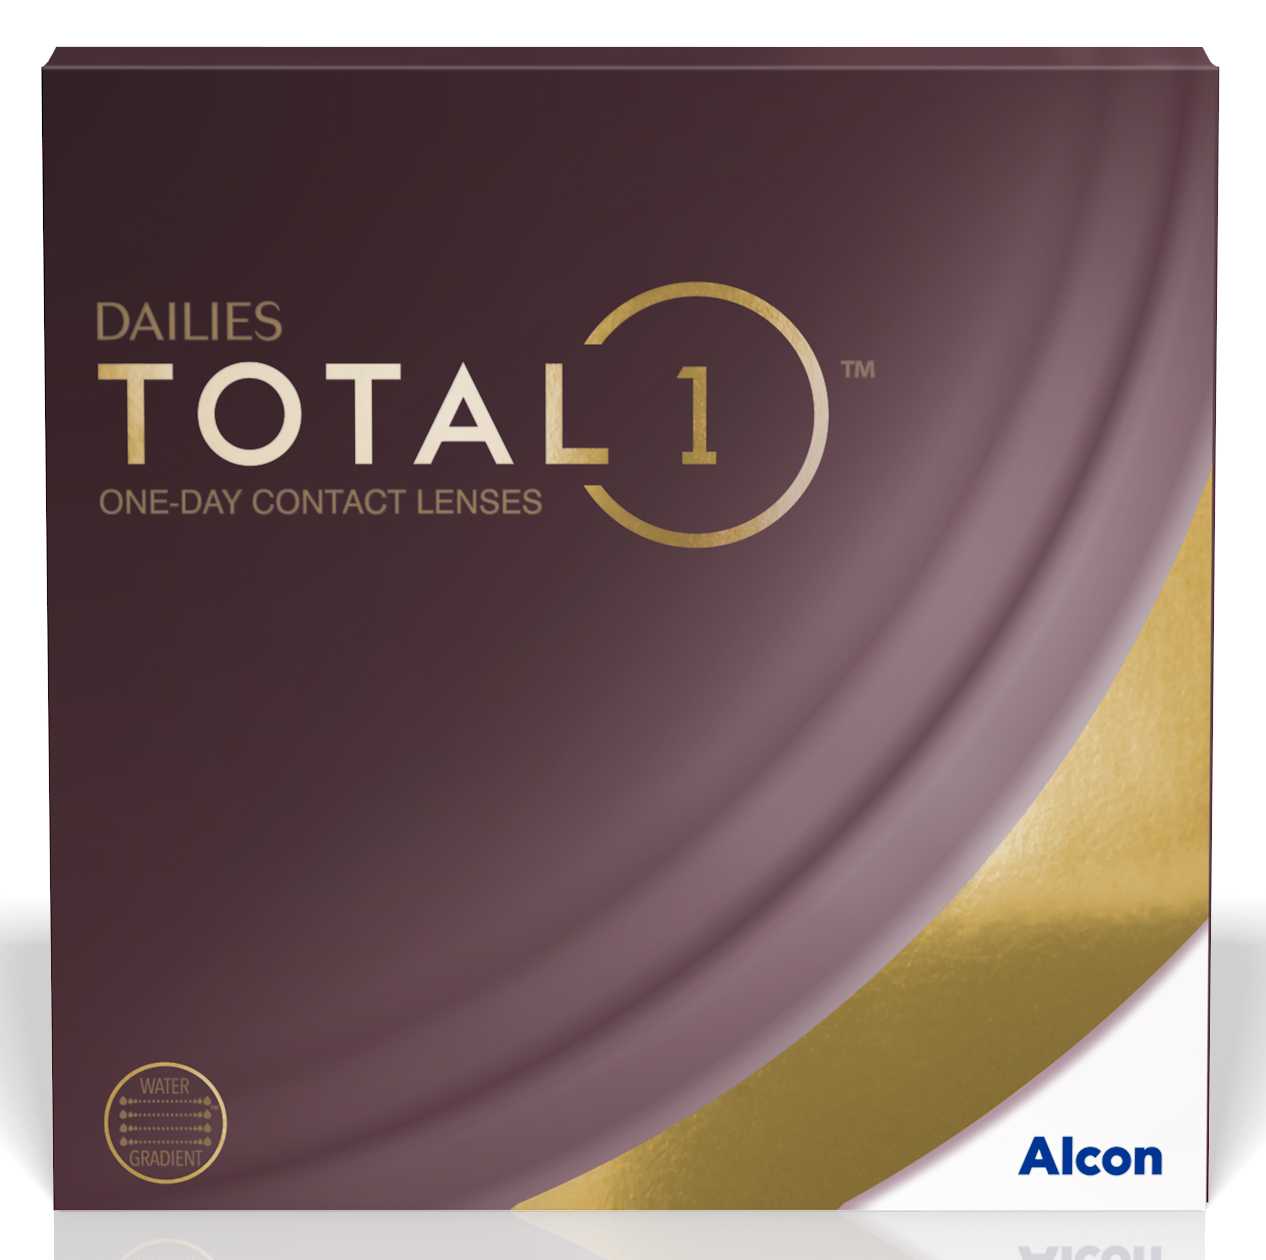 alcon-dailies-total-1-rebate-form-printable-rebate-form